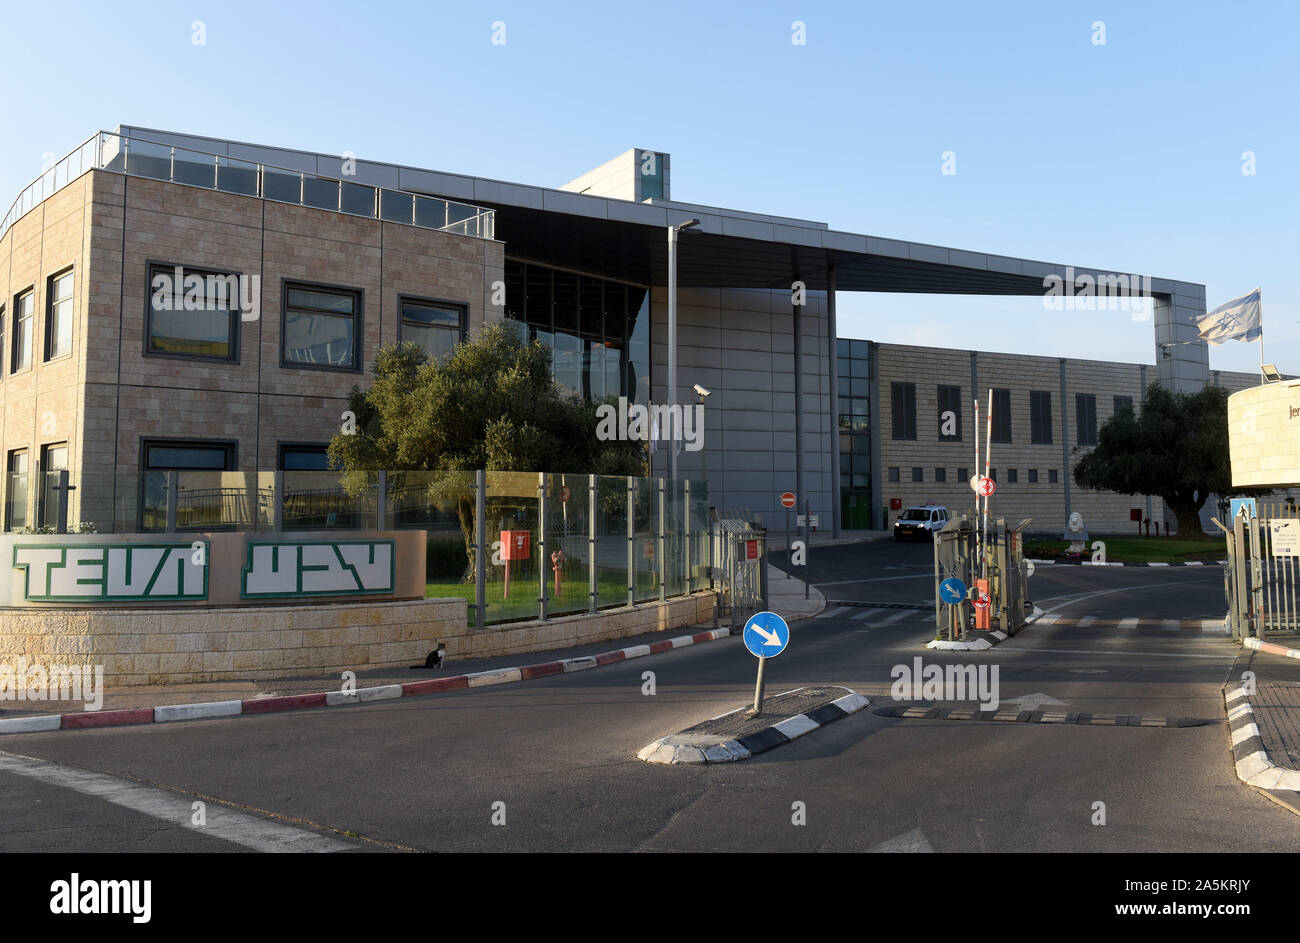 Jerusalén, Israel. 21 Oct, 2019. La Teva Pharmaceutical logo es visto en  inglés y hebreo en su planta de producción de tableta en Jerusalén, el  lunes, 21 de octubre de 2019. El